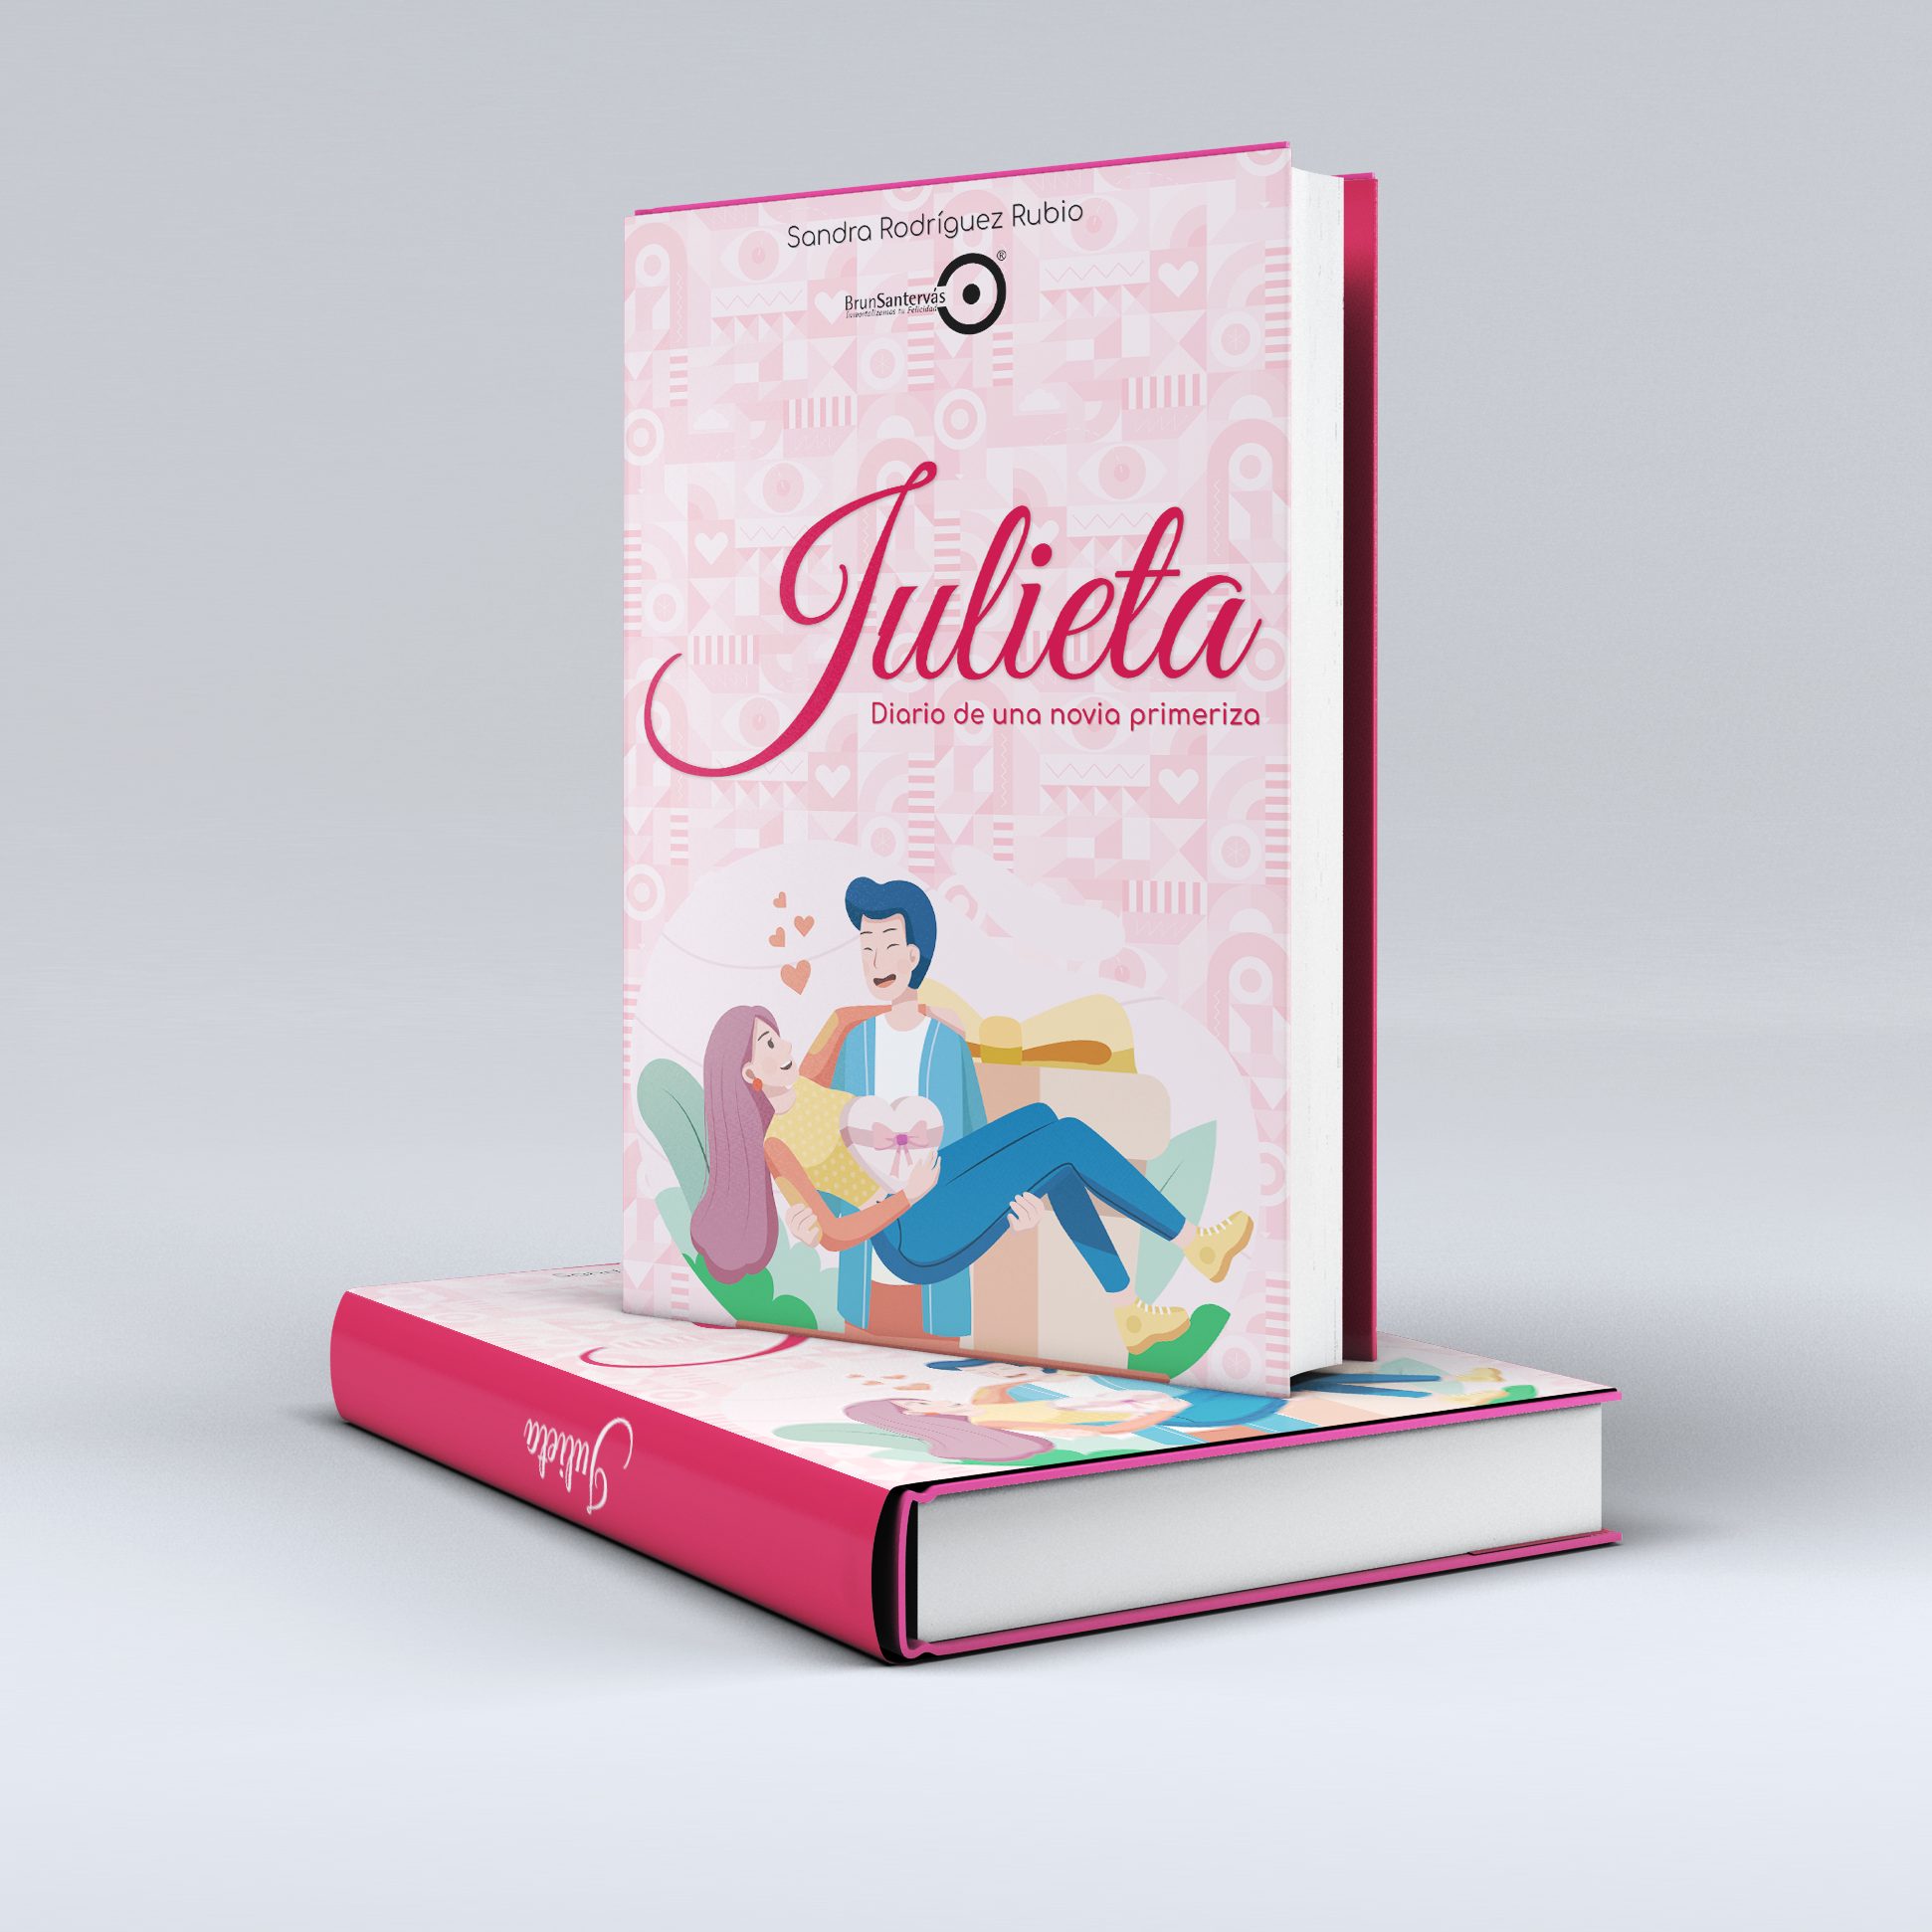 ¡Que saco un libro! «Julieta – Diario de una novia primeriza»